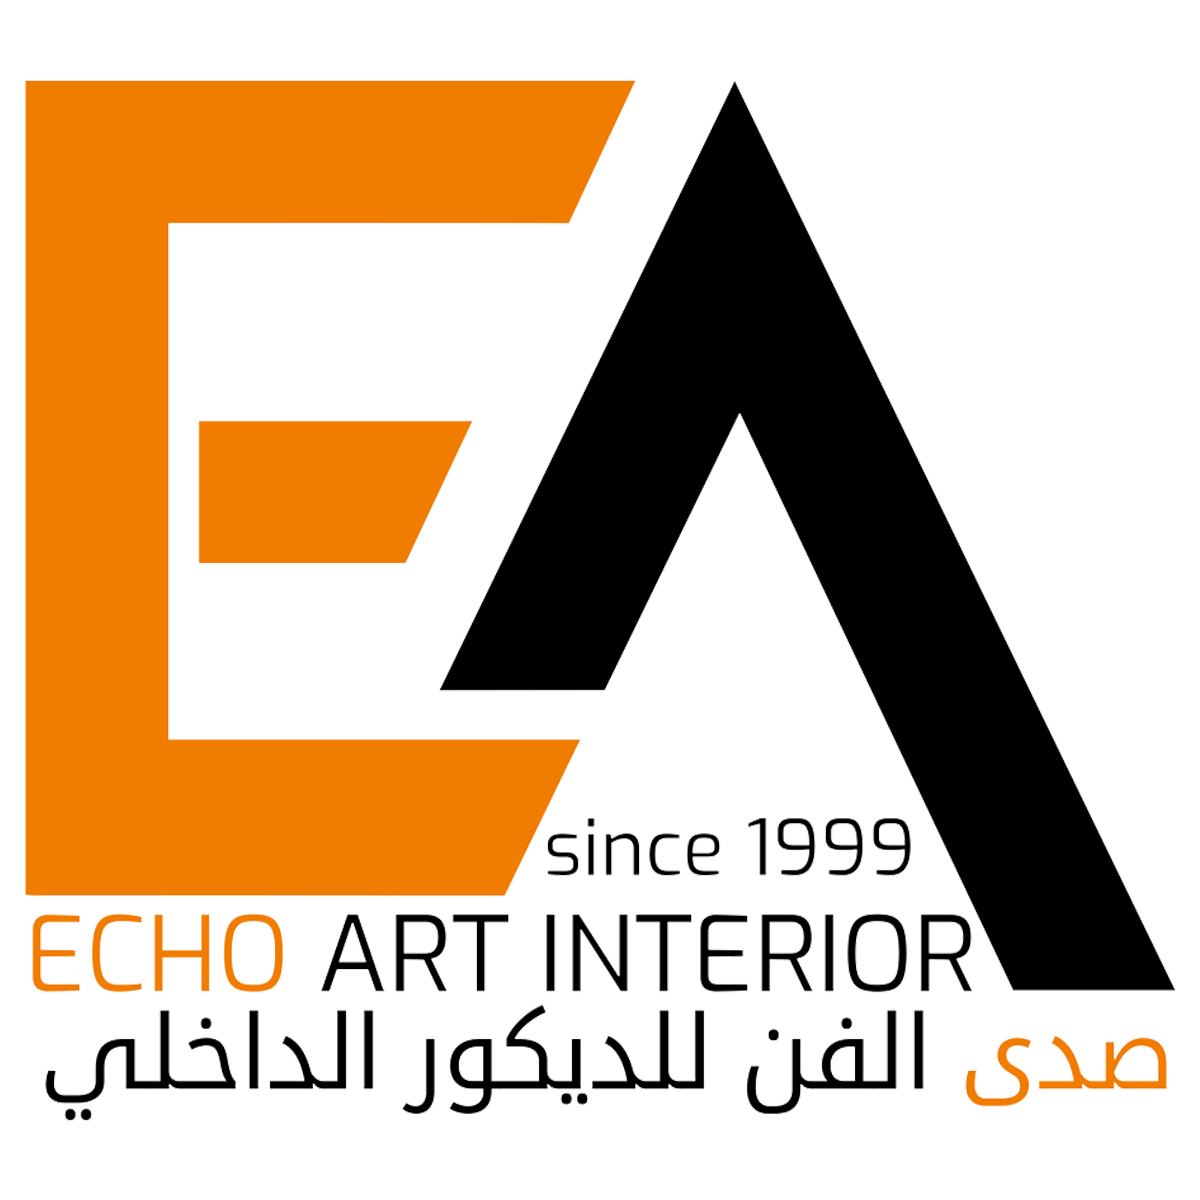 Echo Art